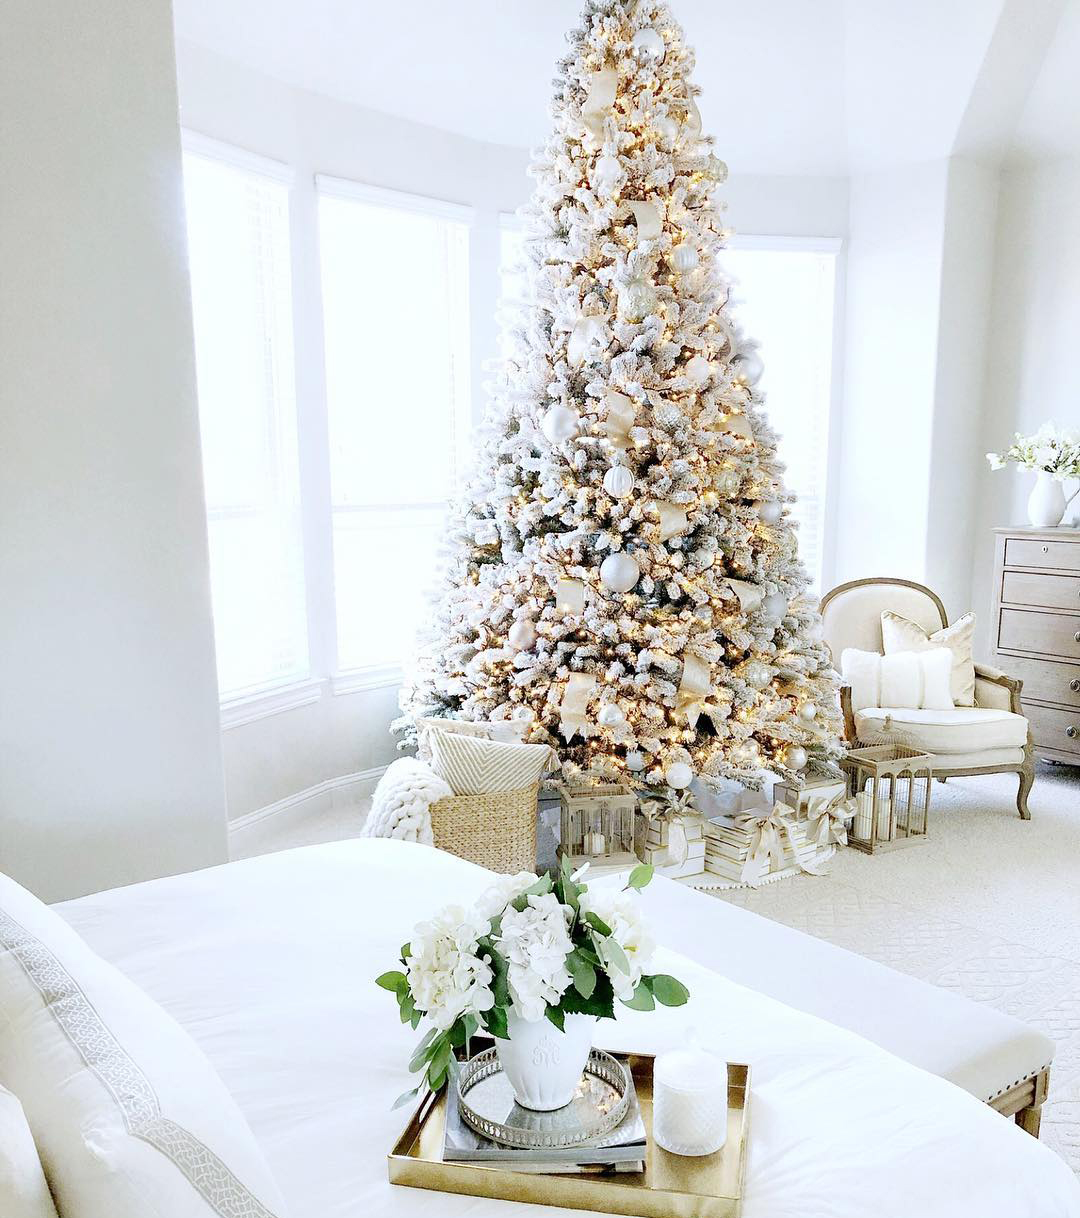 White Christmas Tree Image courtesy of: @mytexasfarmhouse